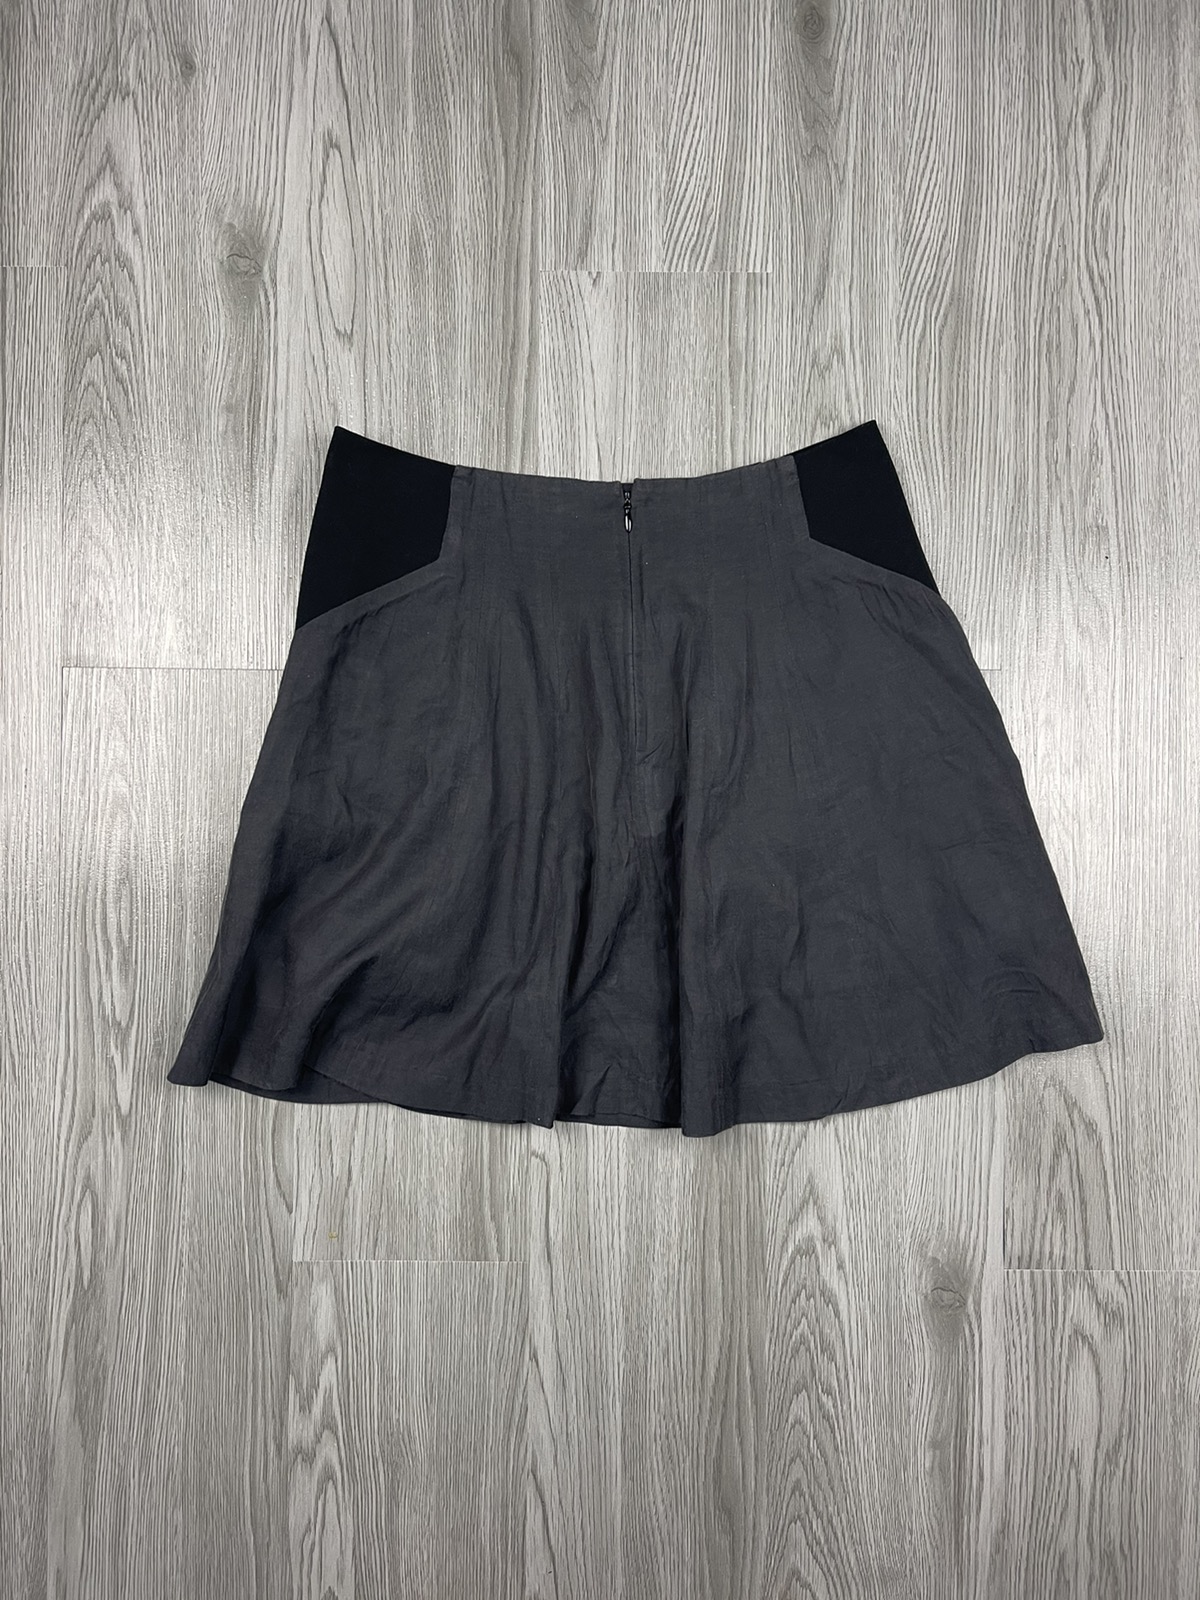 Helmut Lang Pleated Skirt - 2